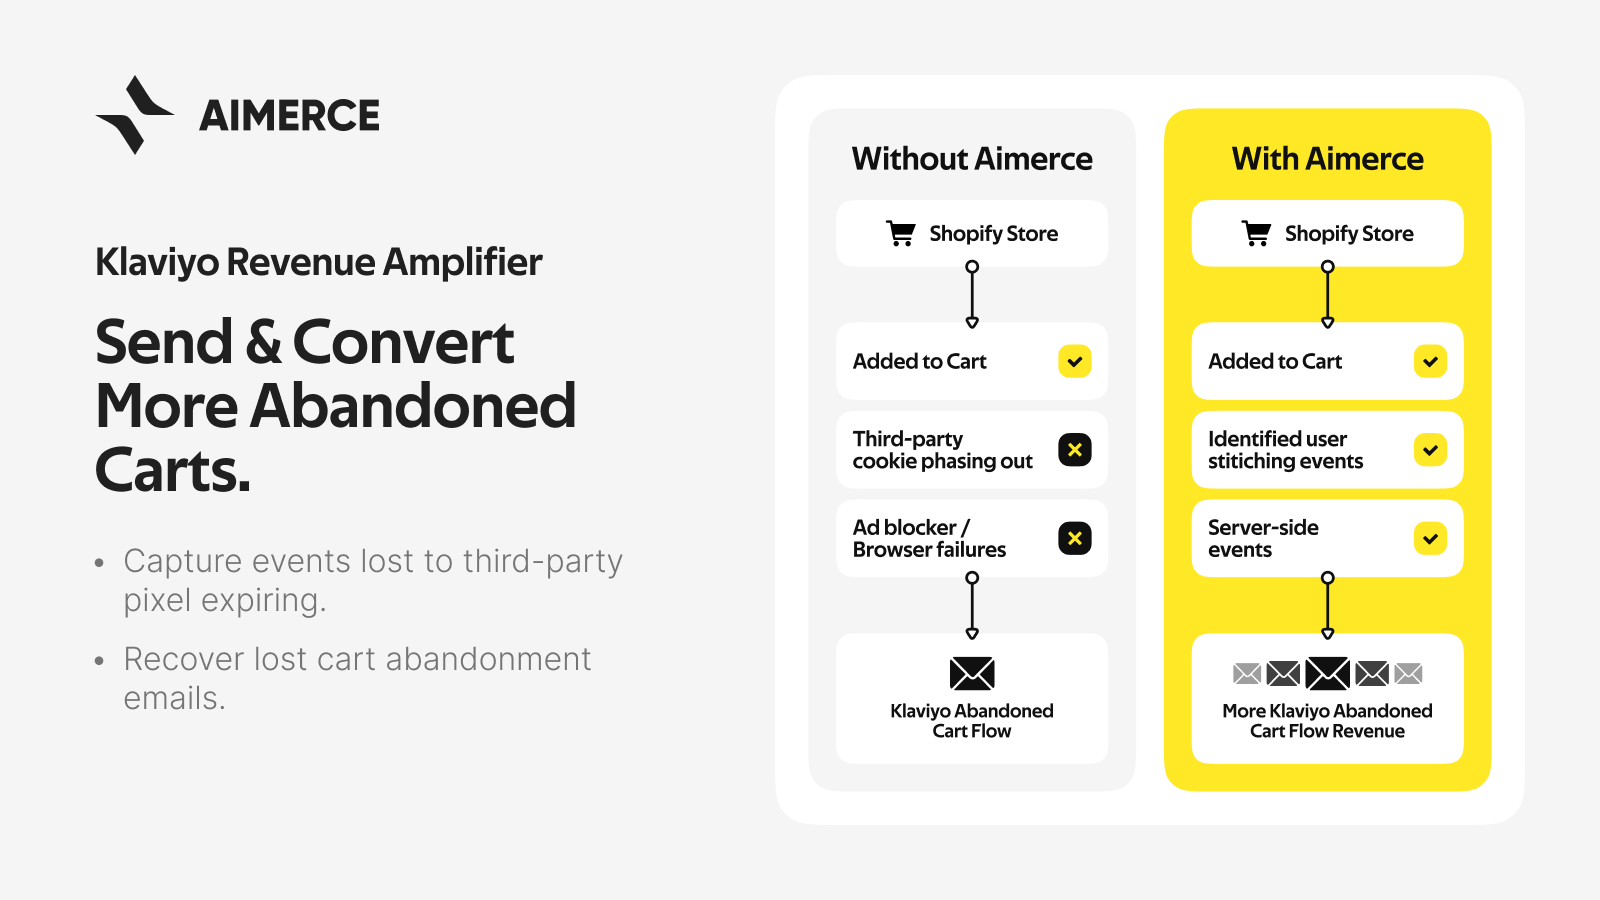 Aimerce First‑Party Pixel Screenshot